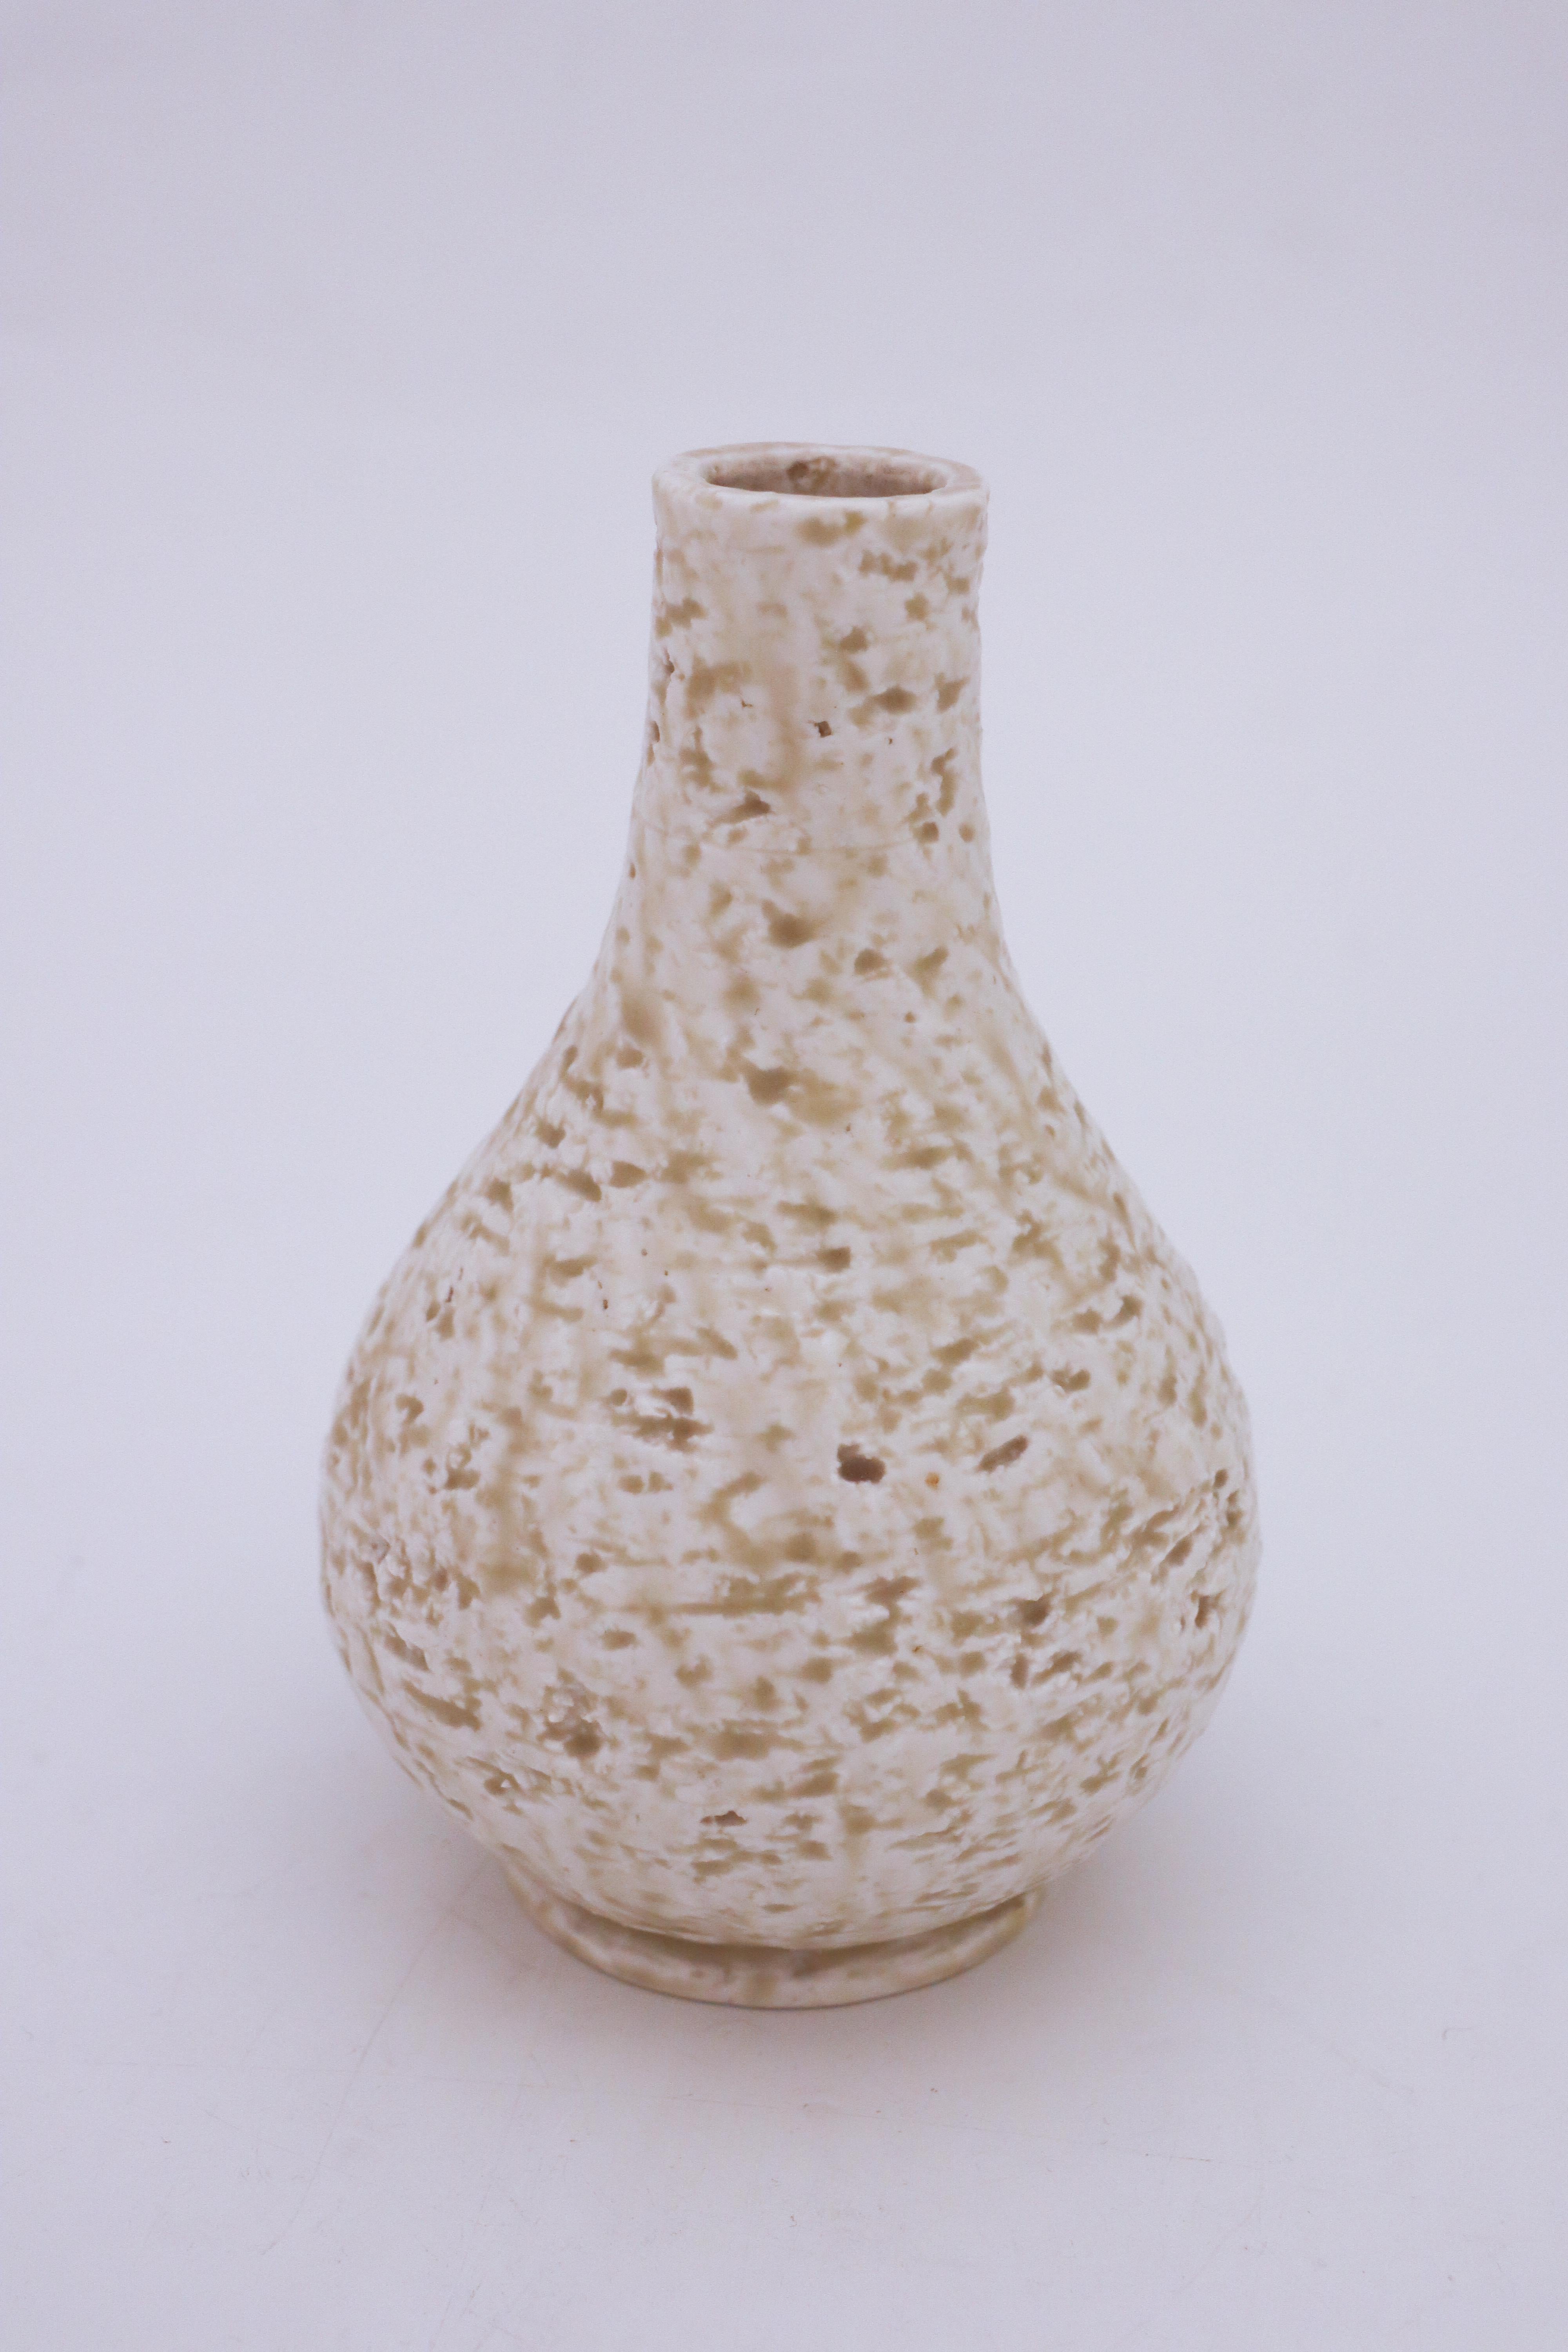 Die Vase wurde von Gunnar Nylund in Rörstrand entworfen. Die Vase ist 18,5 cm hoch und in sehr gutem Zustand, abgesehen von einigen kleinen Flecken.

Gunnar Nylund wurde 1904 in Paris geboren. Seine Eltern arbeiteten als Bildhauer und Designer und